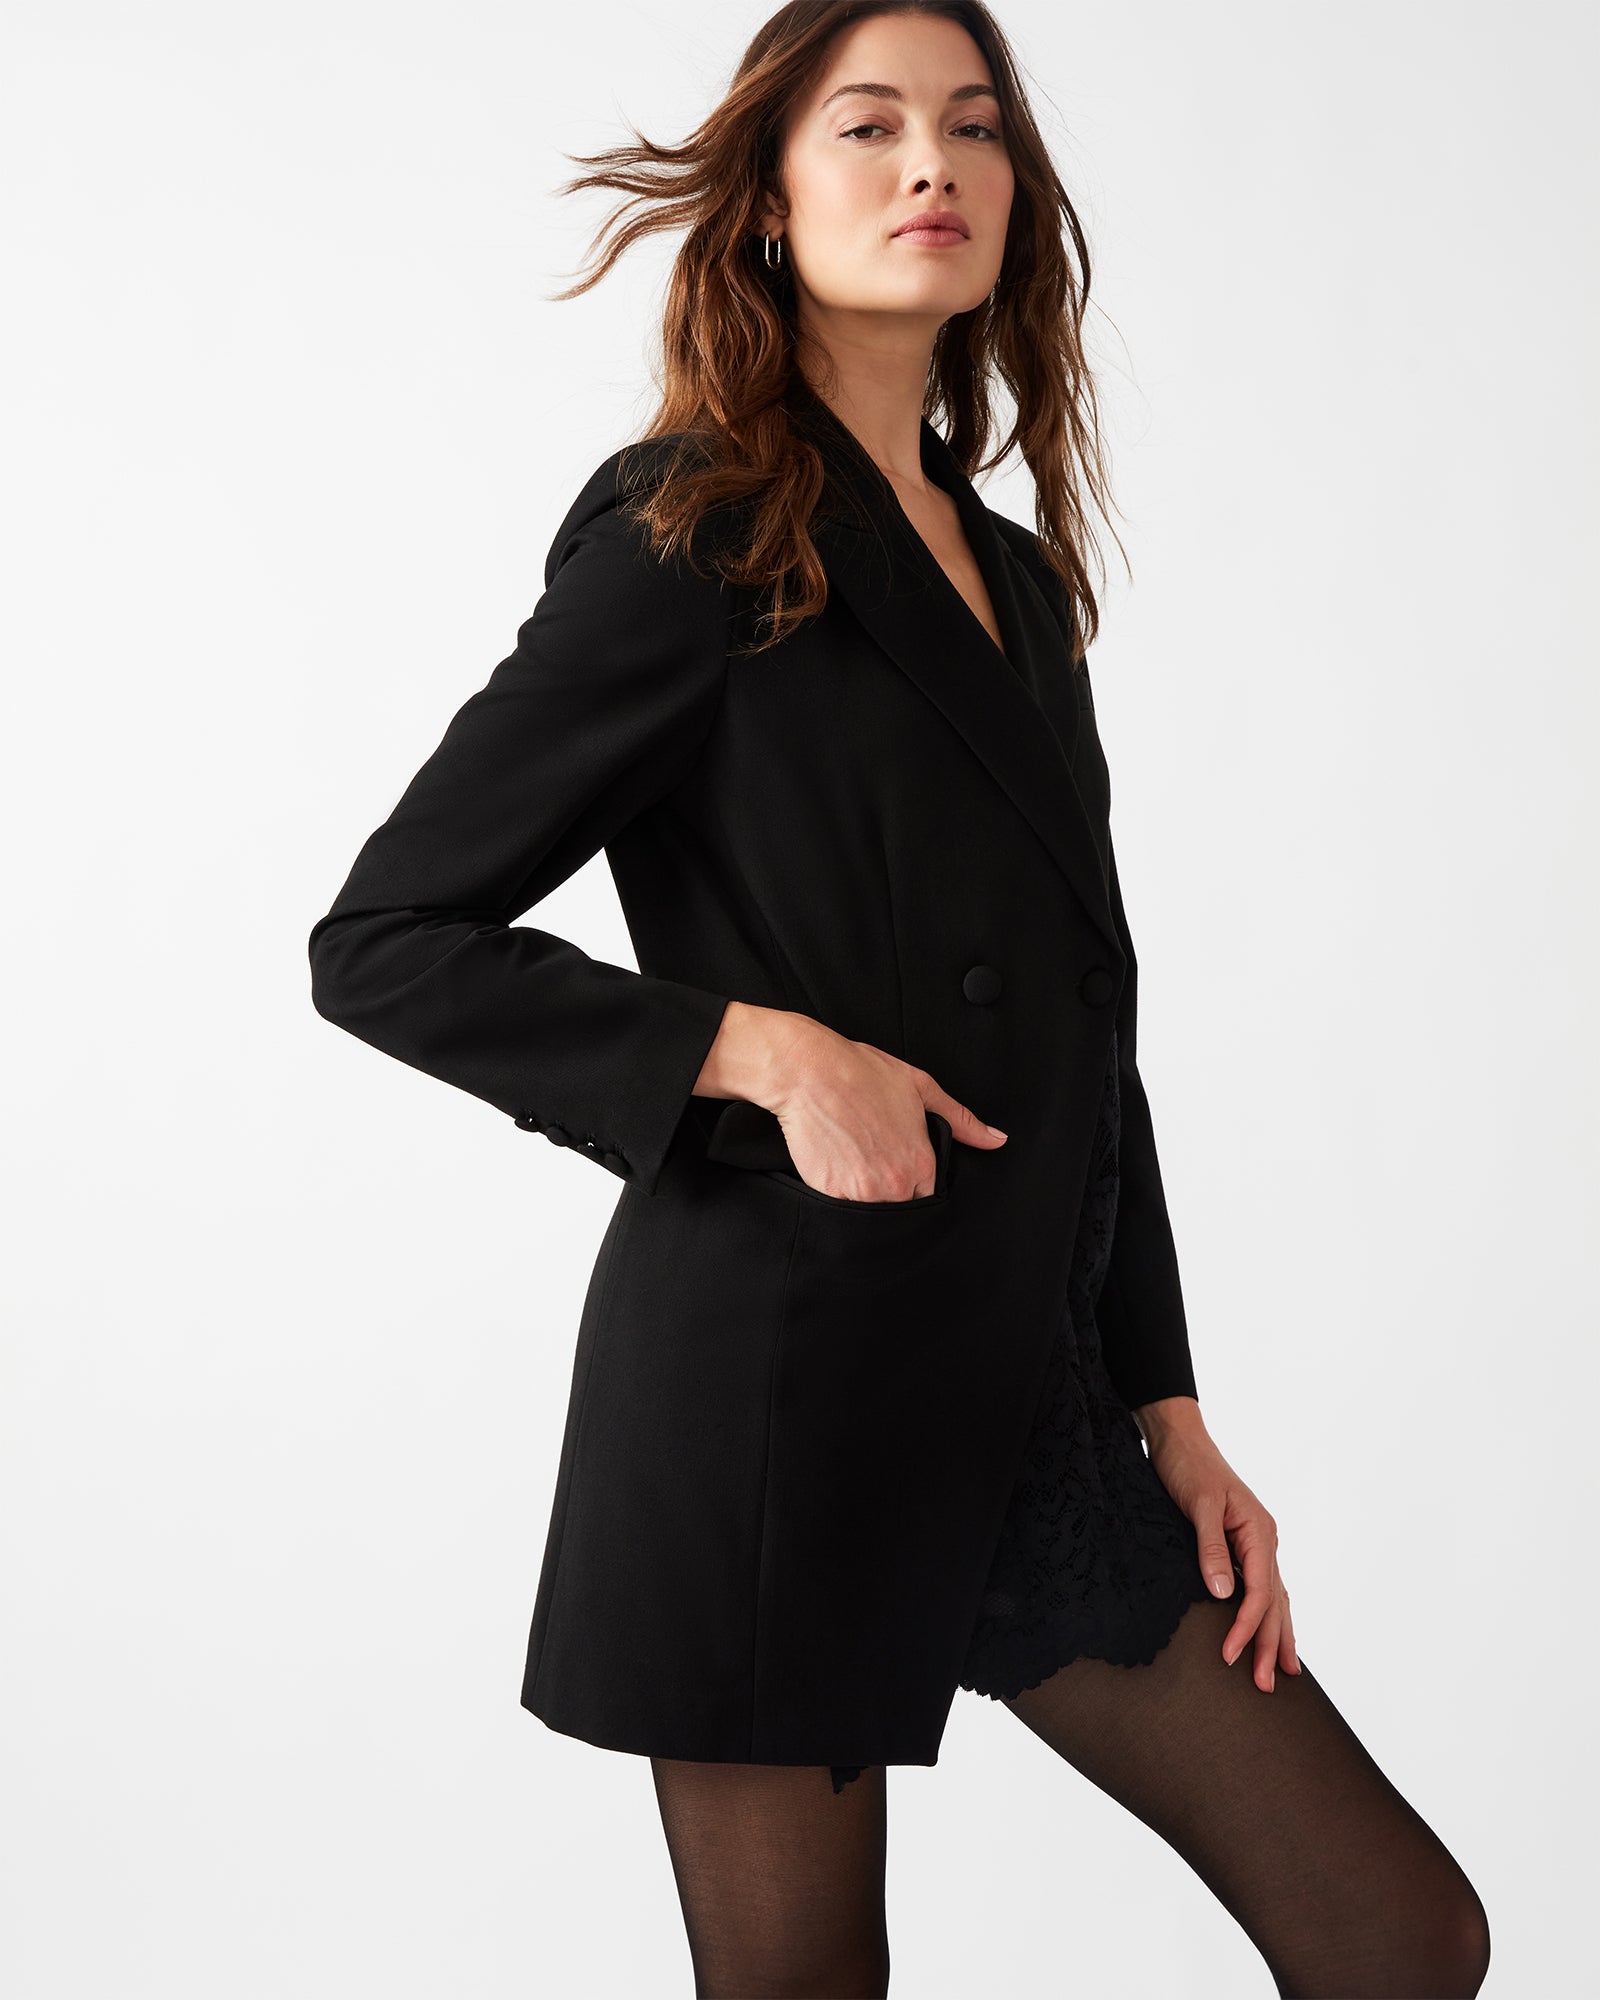 CORRINE Black Blazer Dress | Women's Designer Dresses – Steve Madden Canada